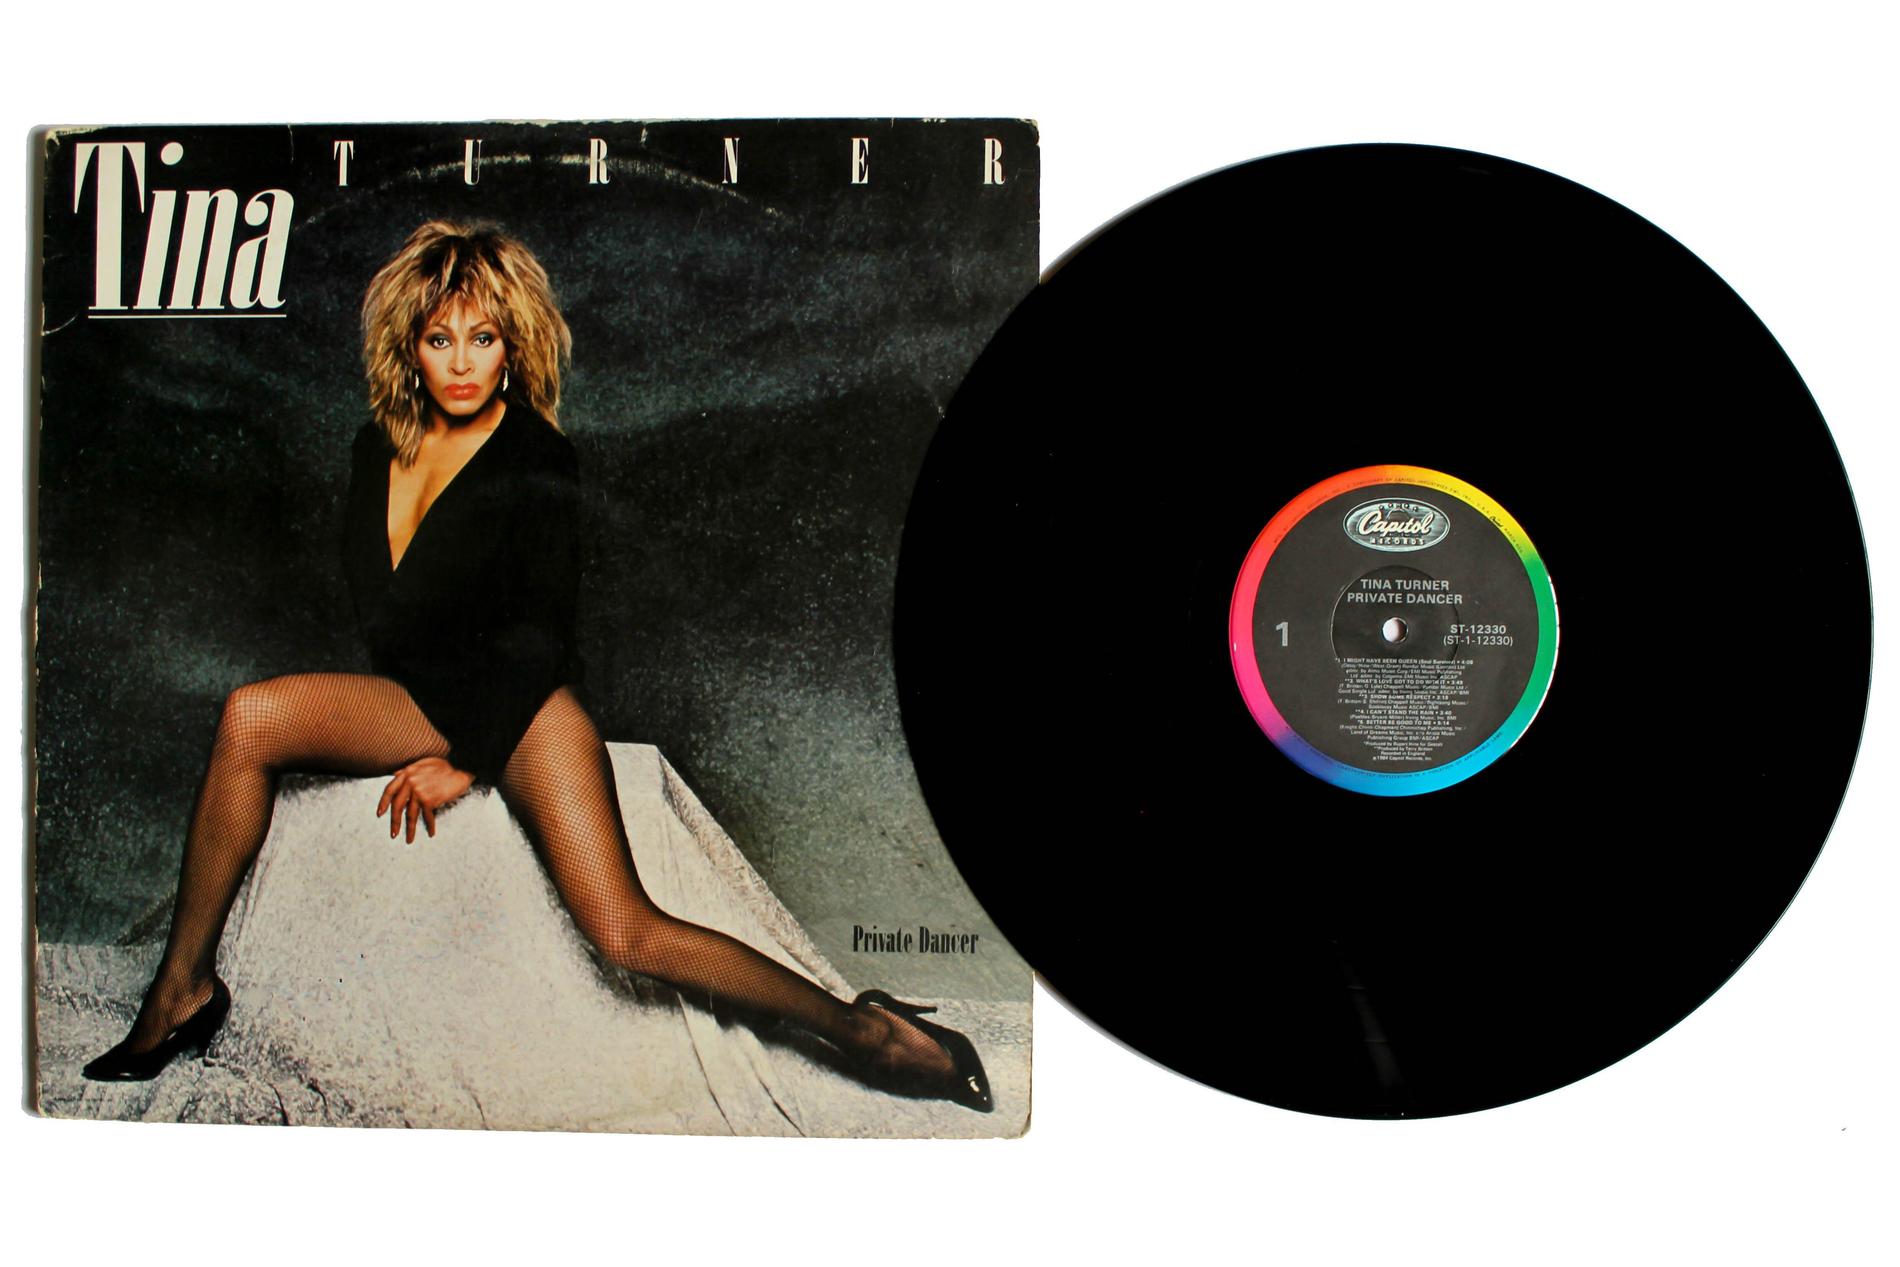 Tina Turner på skivan ”Private dancer”.